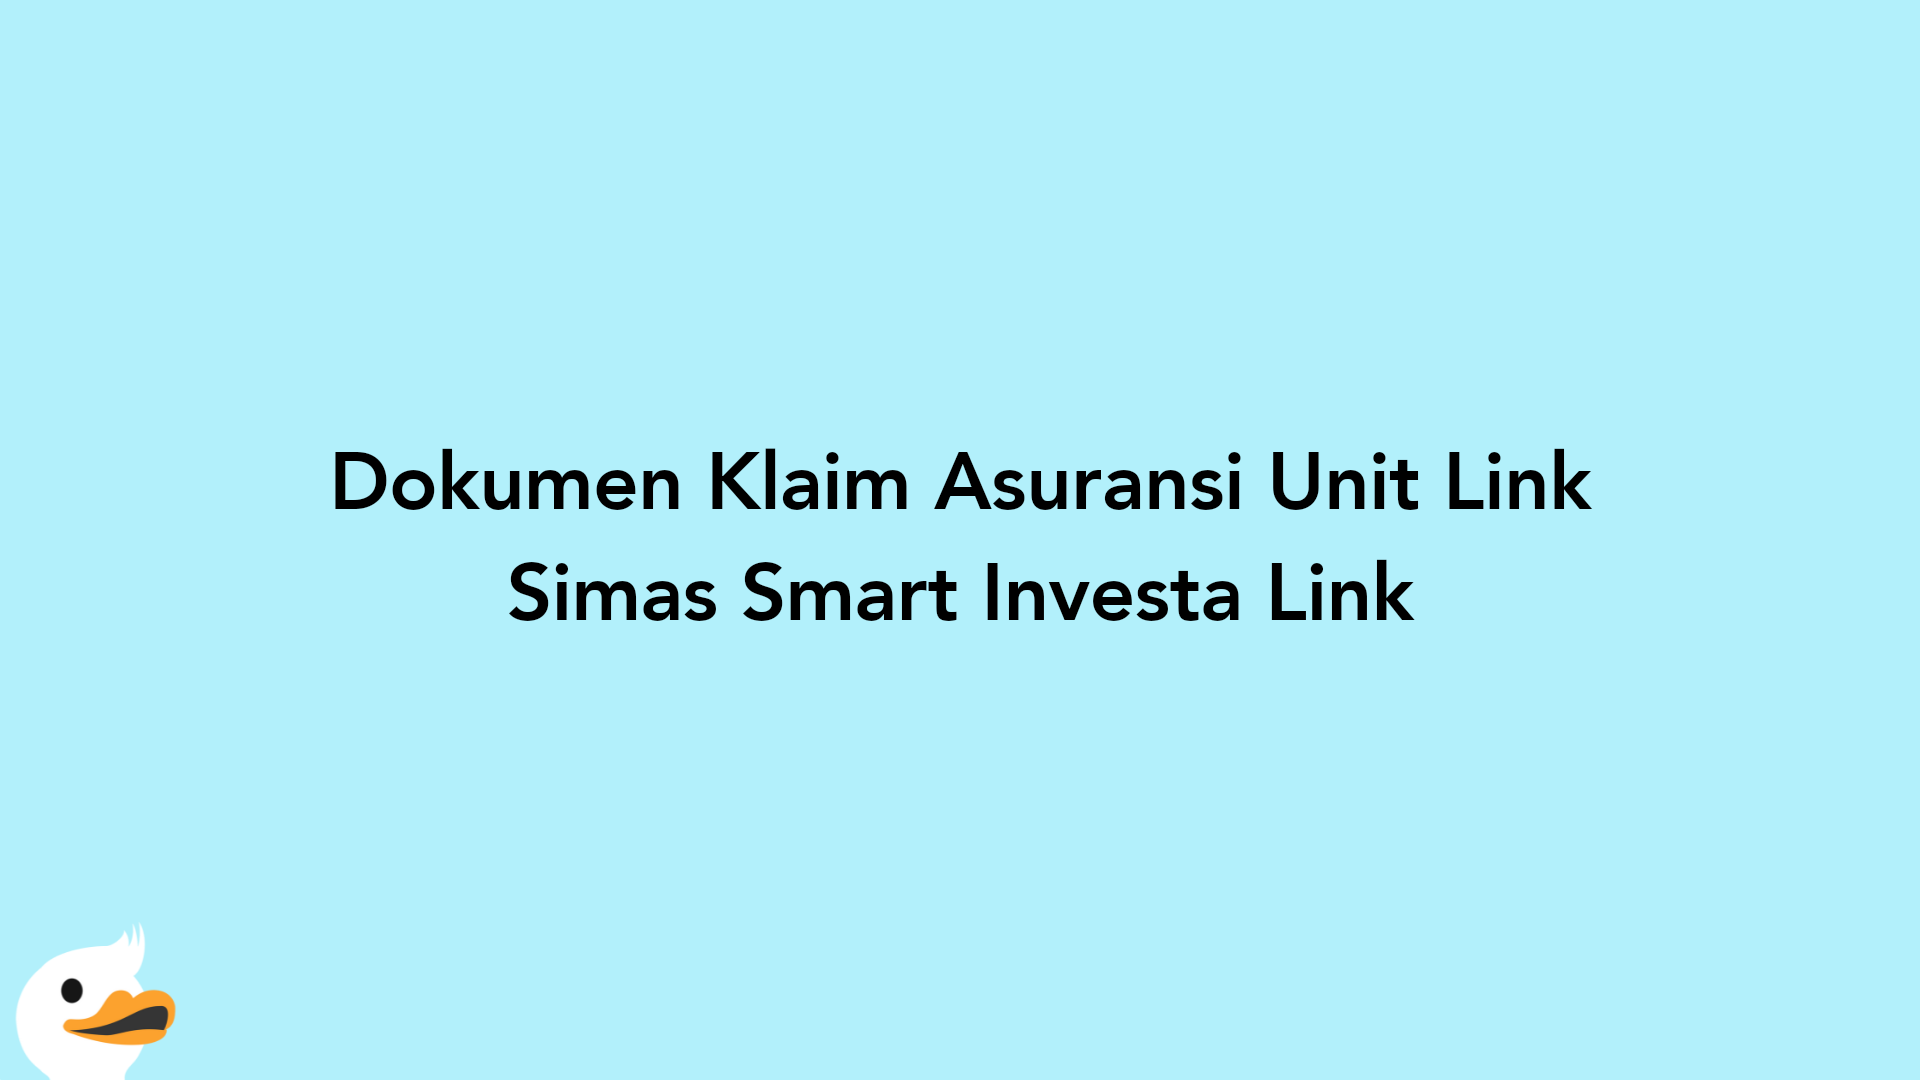 Dokumen Klaim Asuransi Unit Link Simas Smart Investa Link